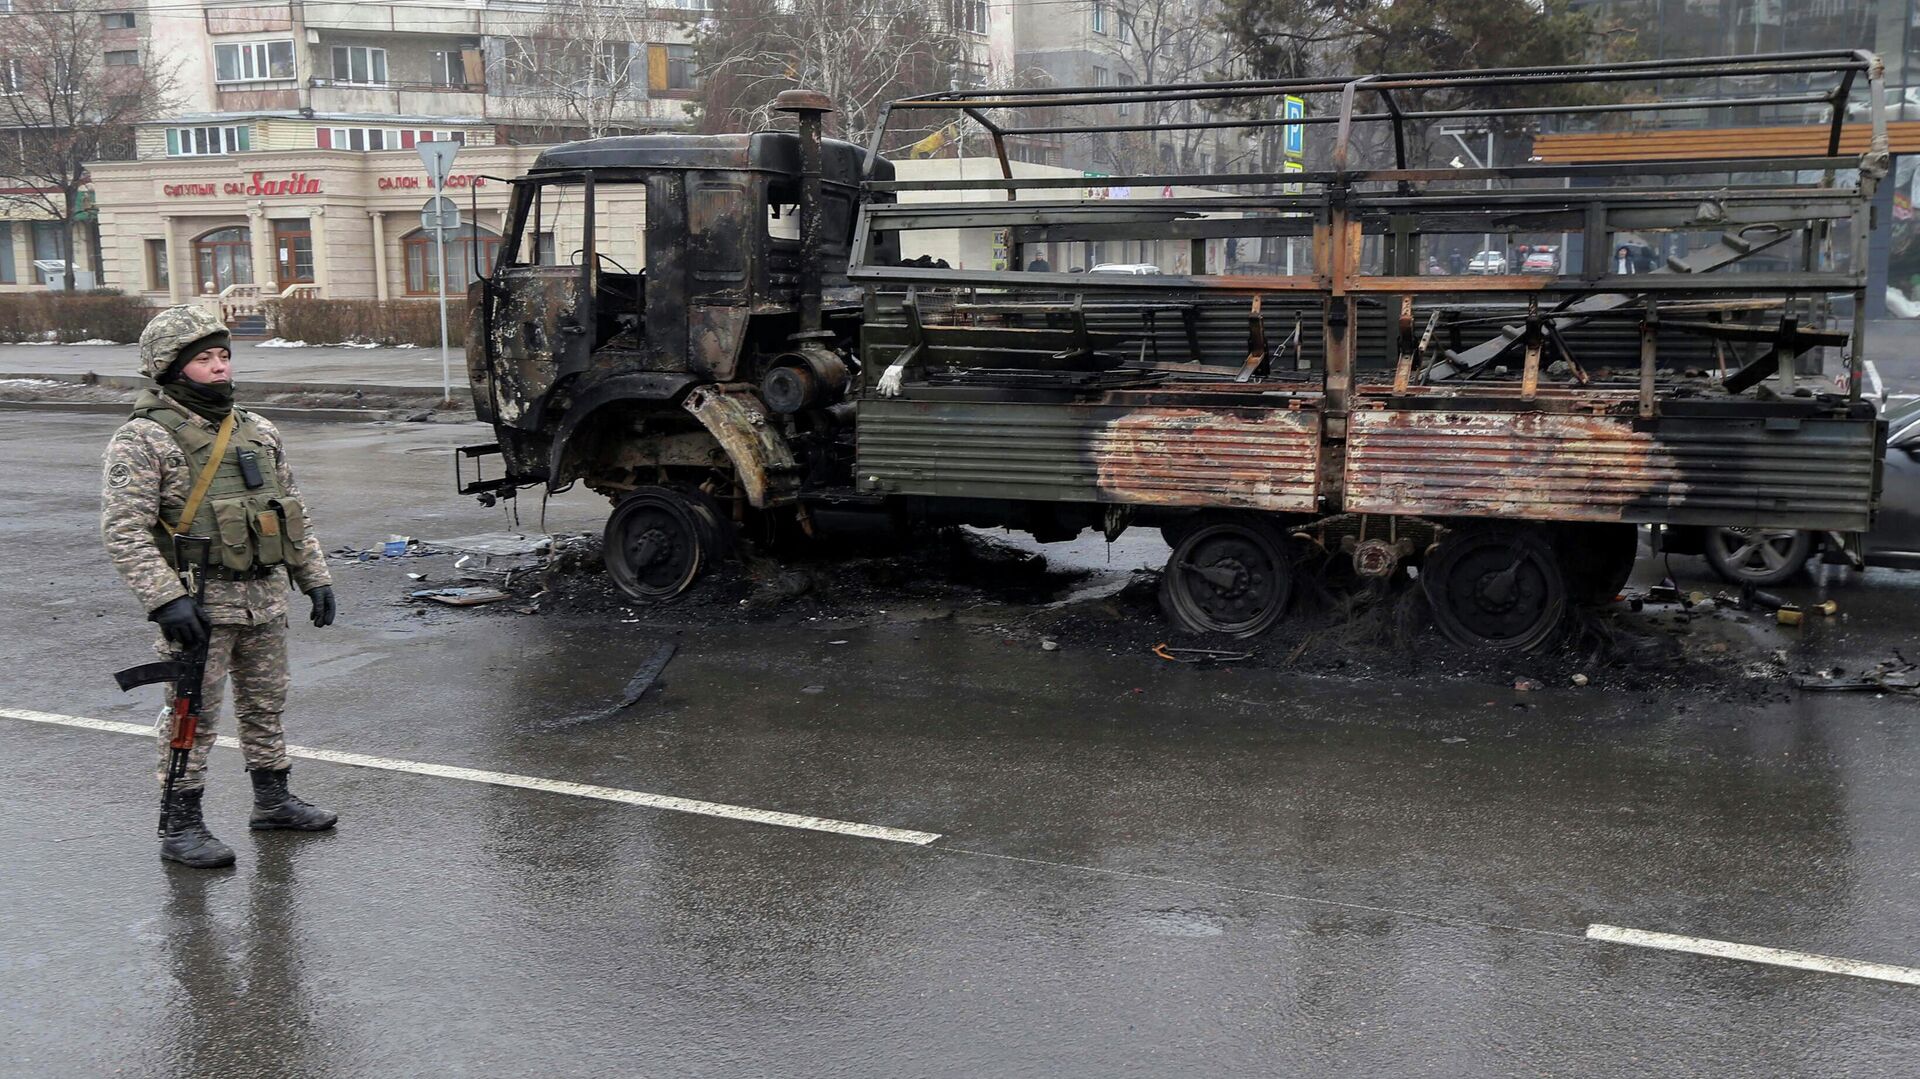 Военный возле сгоревшего грузовика на одной из улиц в Алма-Ате - РИА Новости, 1920, 08.01.2022